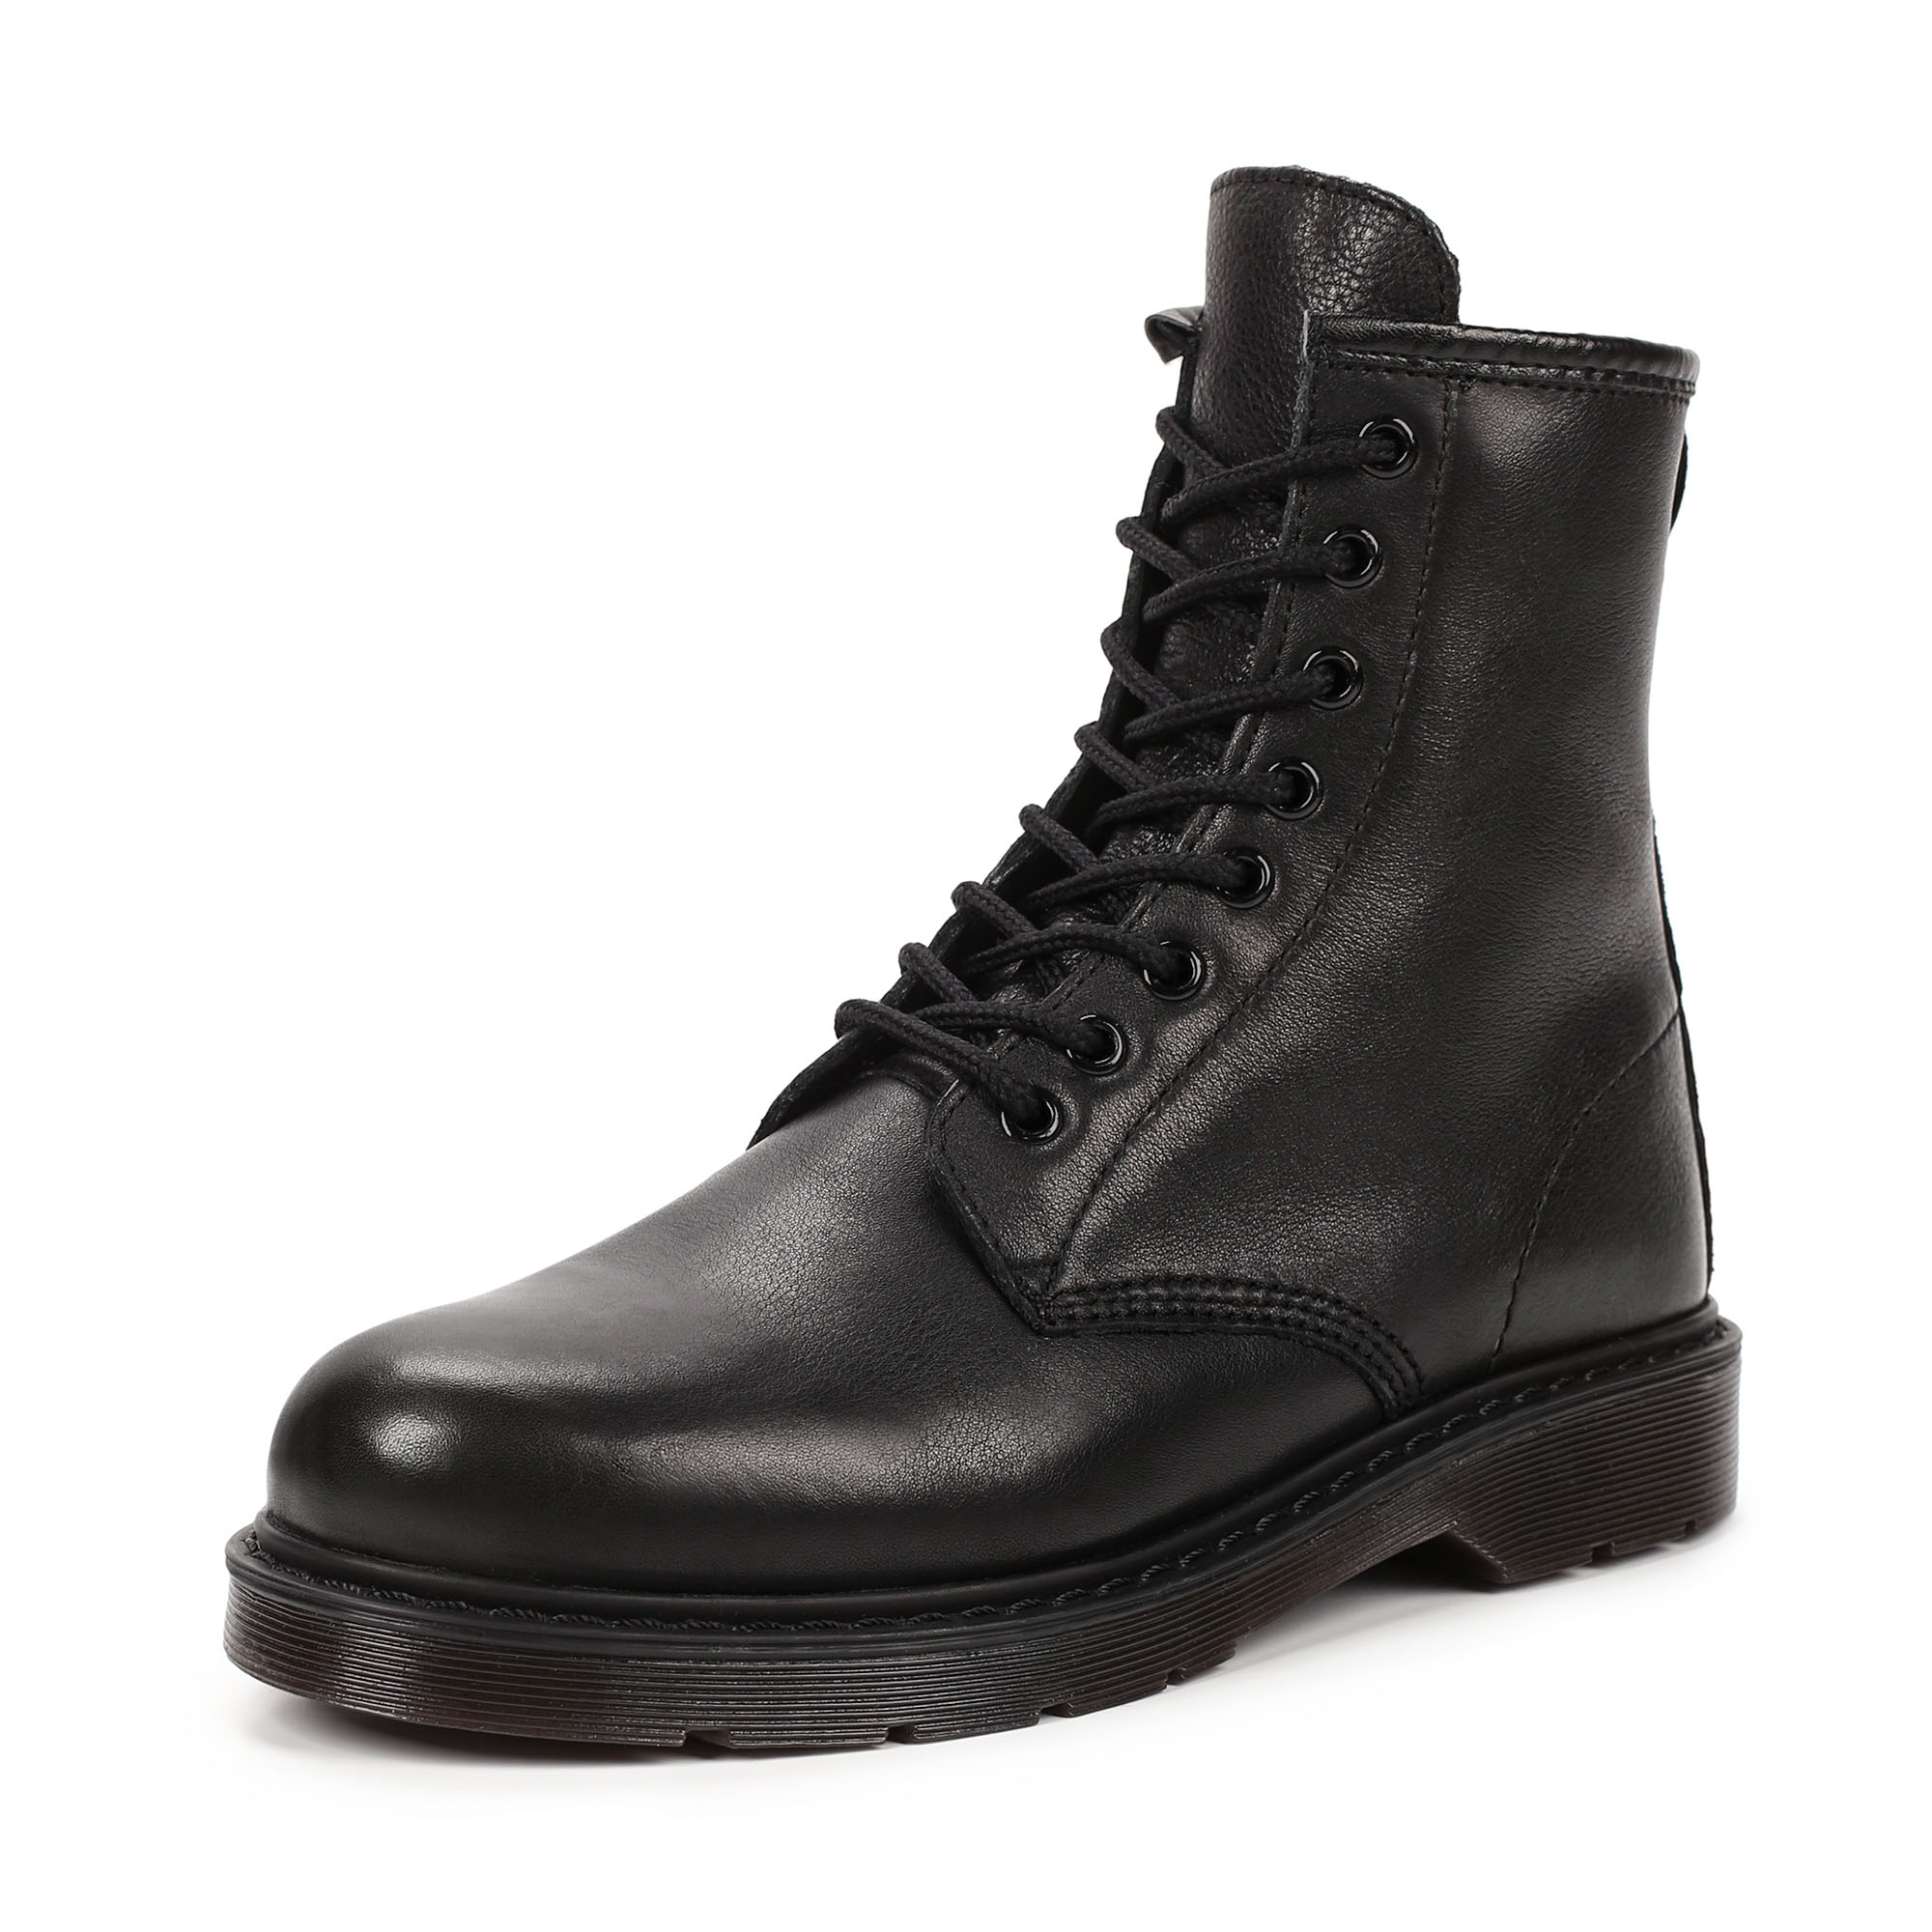 Ботинки Thomas Munz 569-162A-4102, цвет черный, размер 38 - фото 2